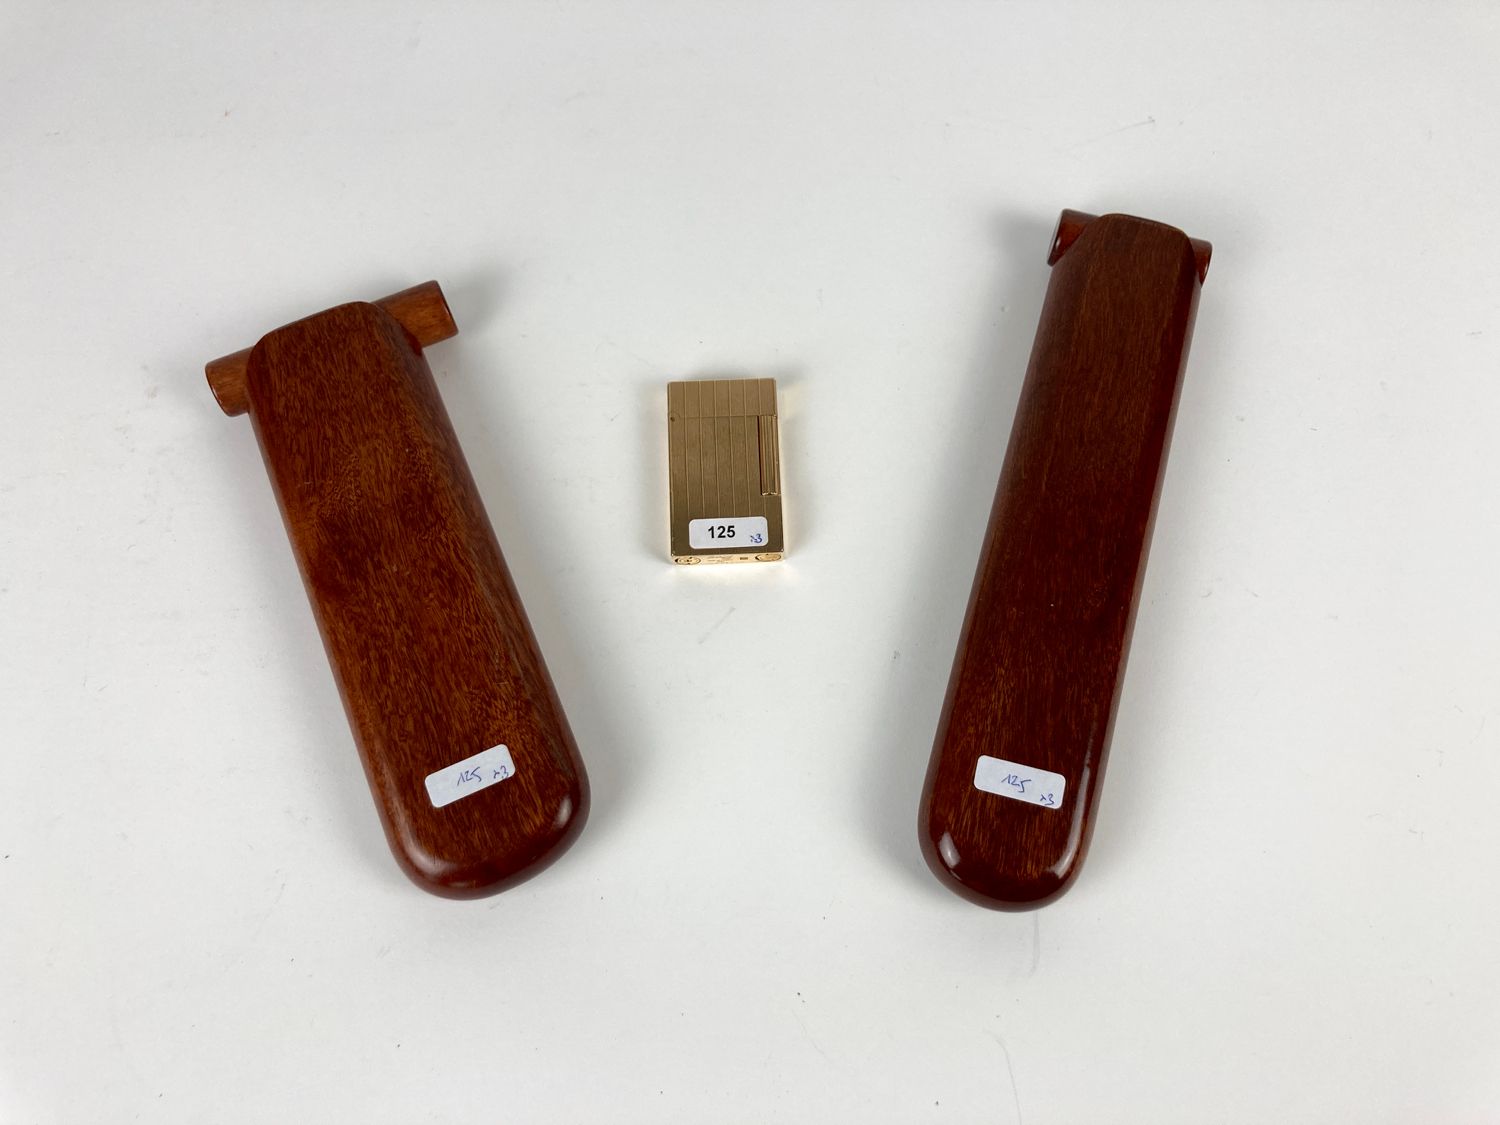 Dupont - Paris 镀金打火机，有印记，高6厘米[使用状况]；附有两个雪茄盒，长20厘米和23.5厘米。